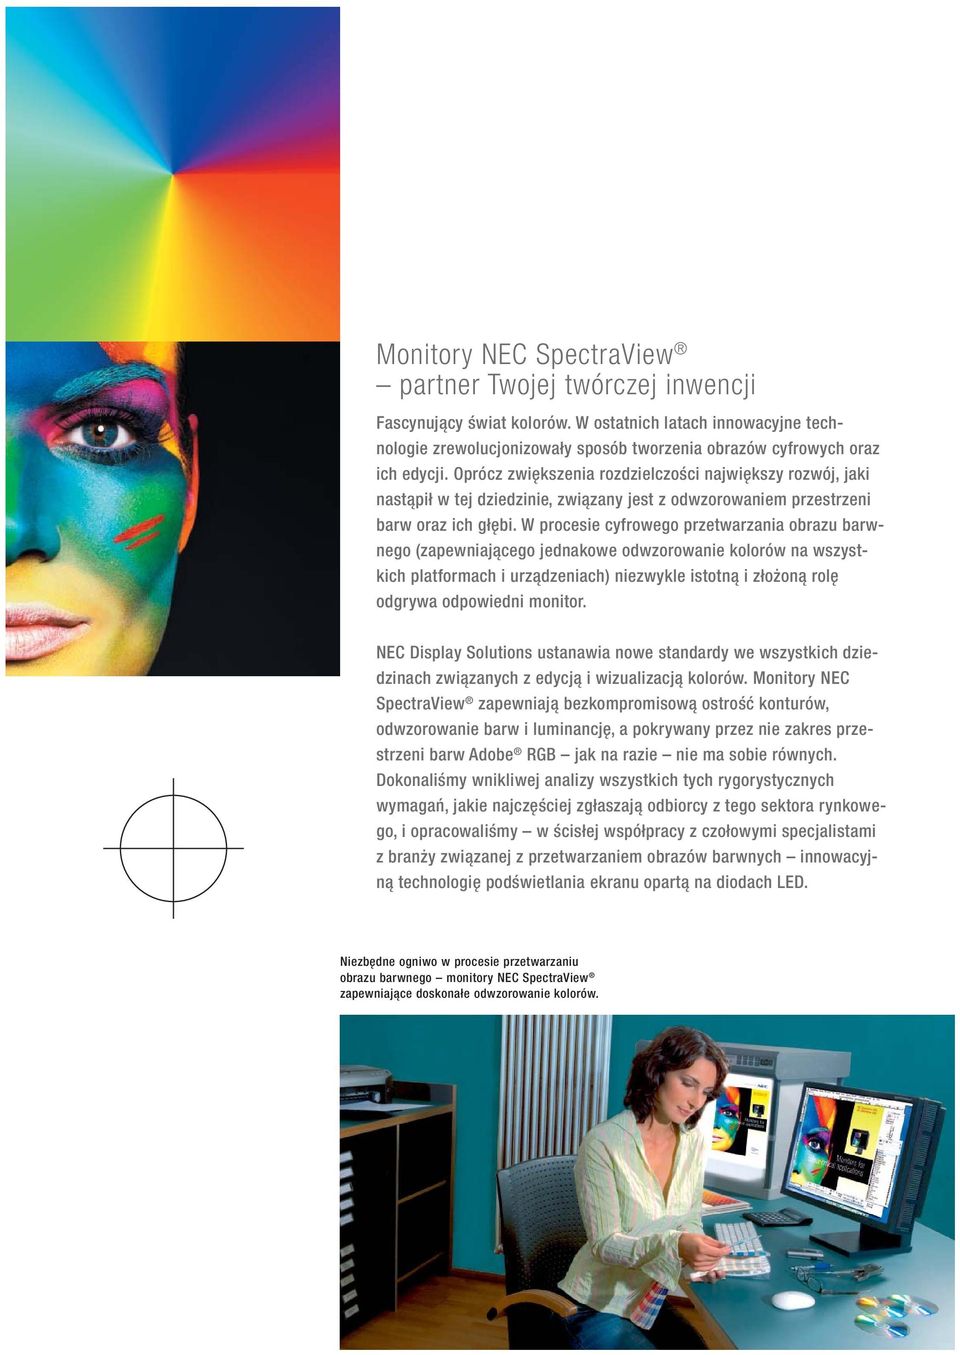 W procesie cyfrowego przetwarzania obrazu barwnego (zapewniającego jednakowe odwzorowanie kolorów na wszystkich platformach i urządzeniach) niezwykle istotną i złożoną rolę odgrywa odpowiedni monitor.